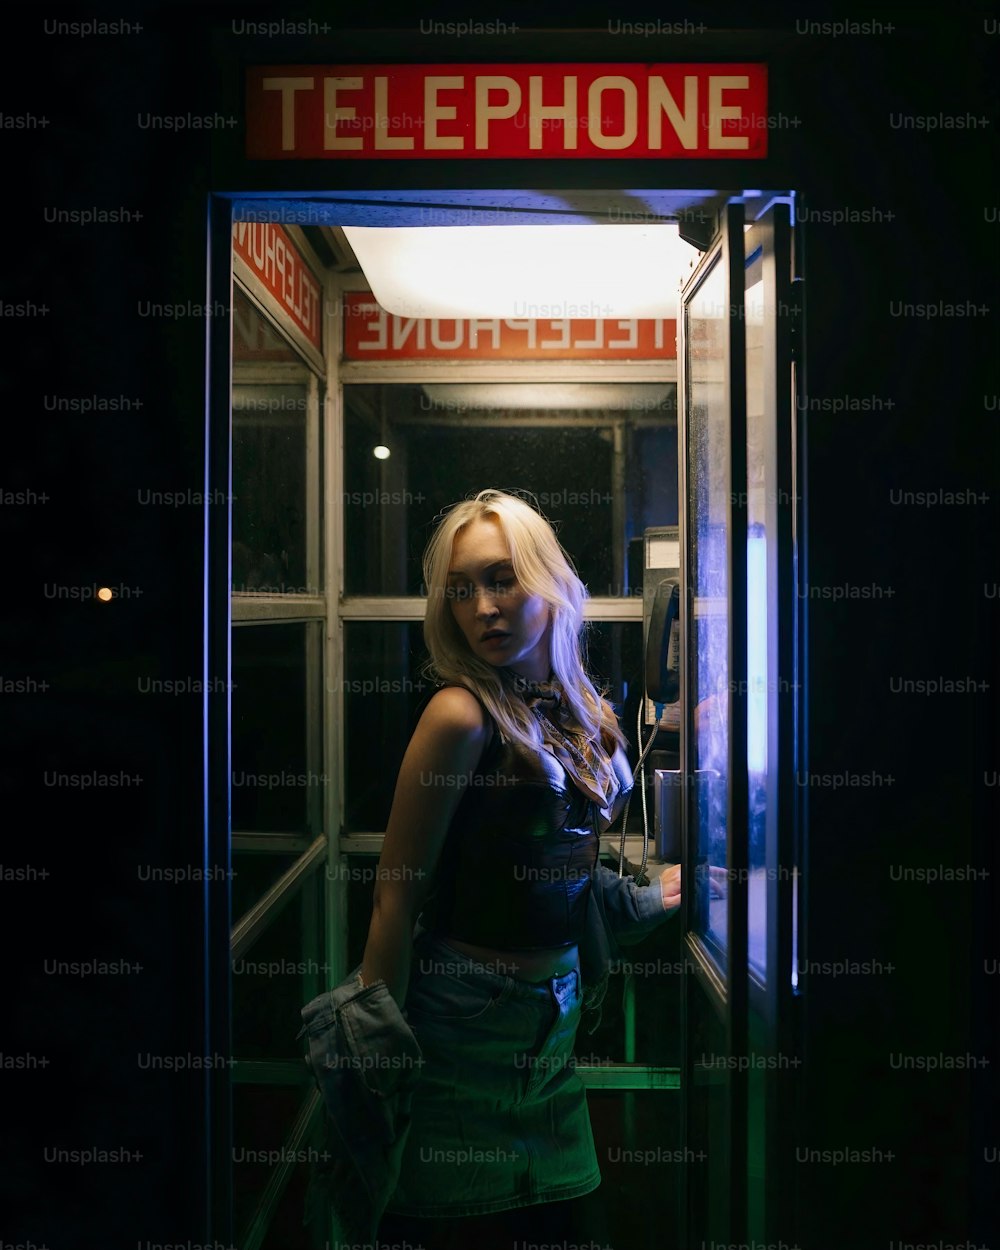 Une femme se tient dans une cabine téléphonique